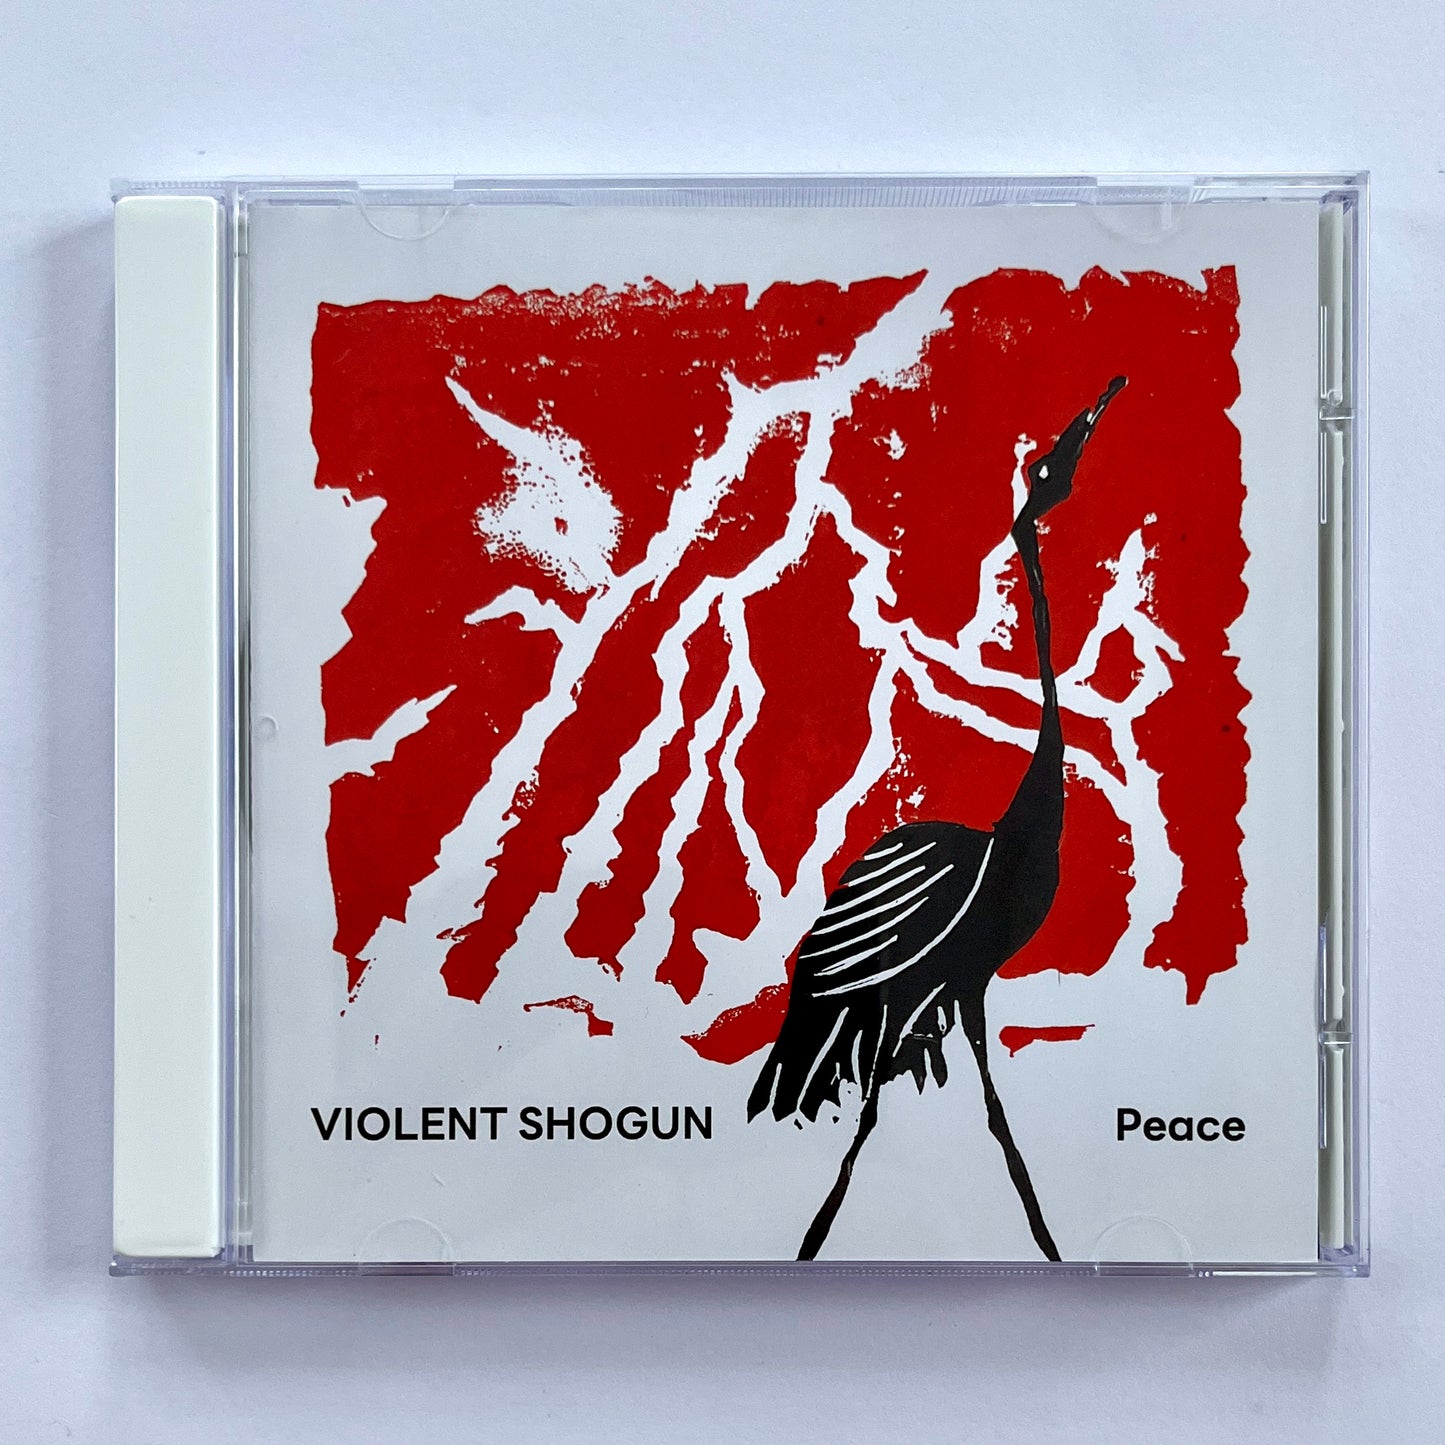 Violent Shogun - Peace CD